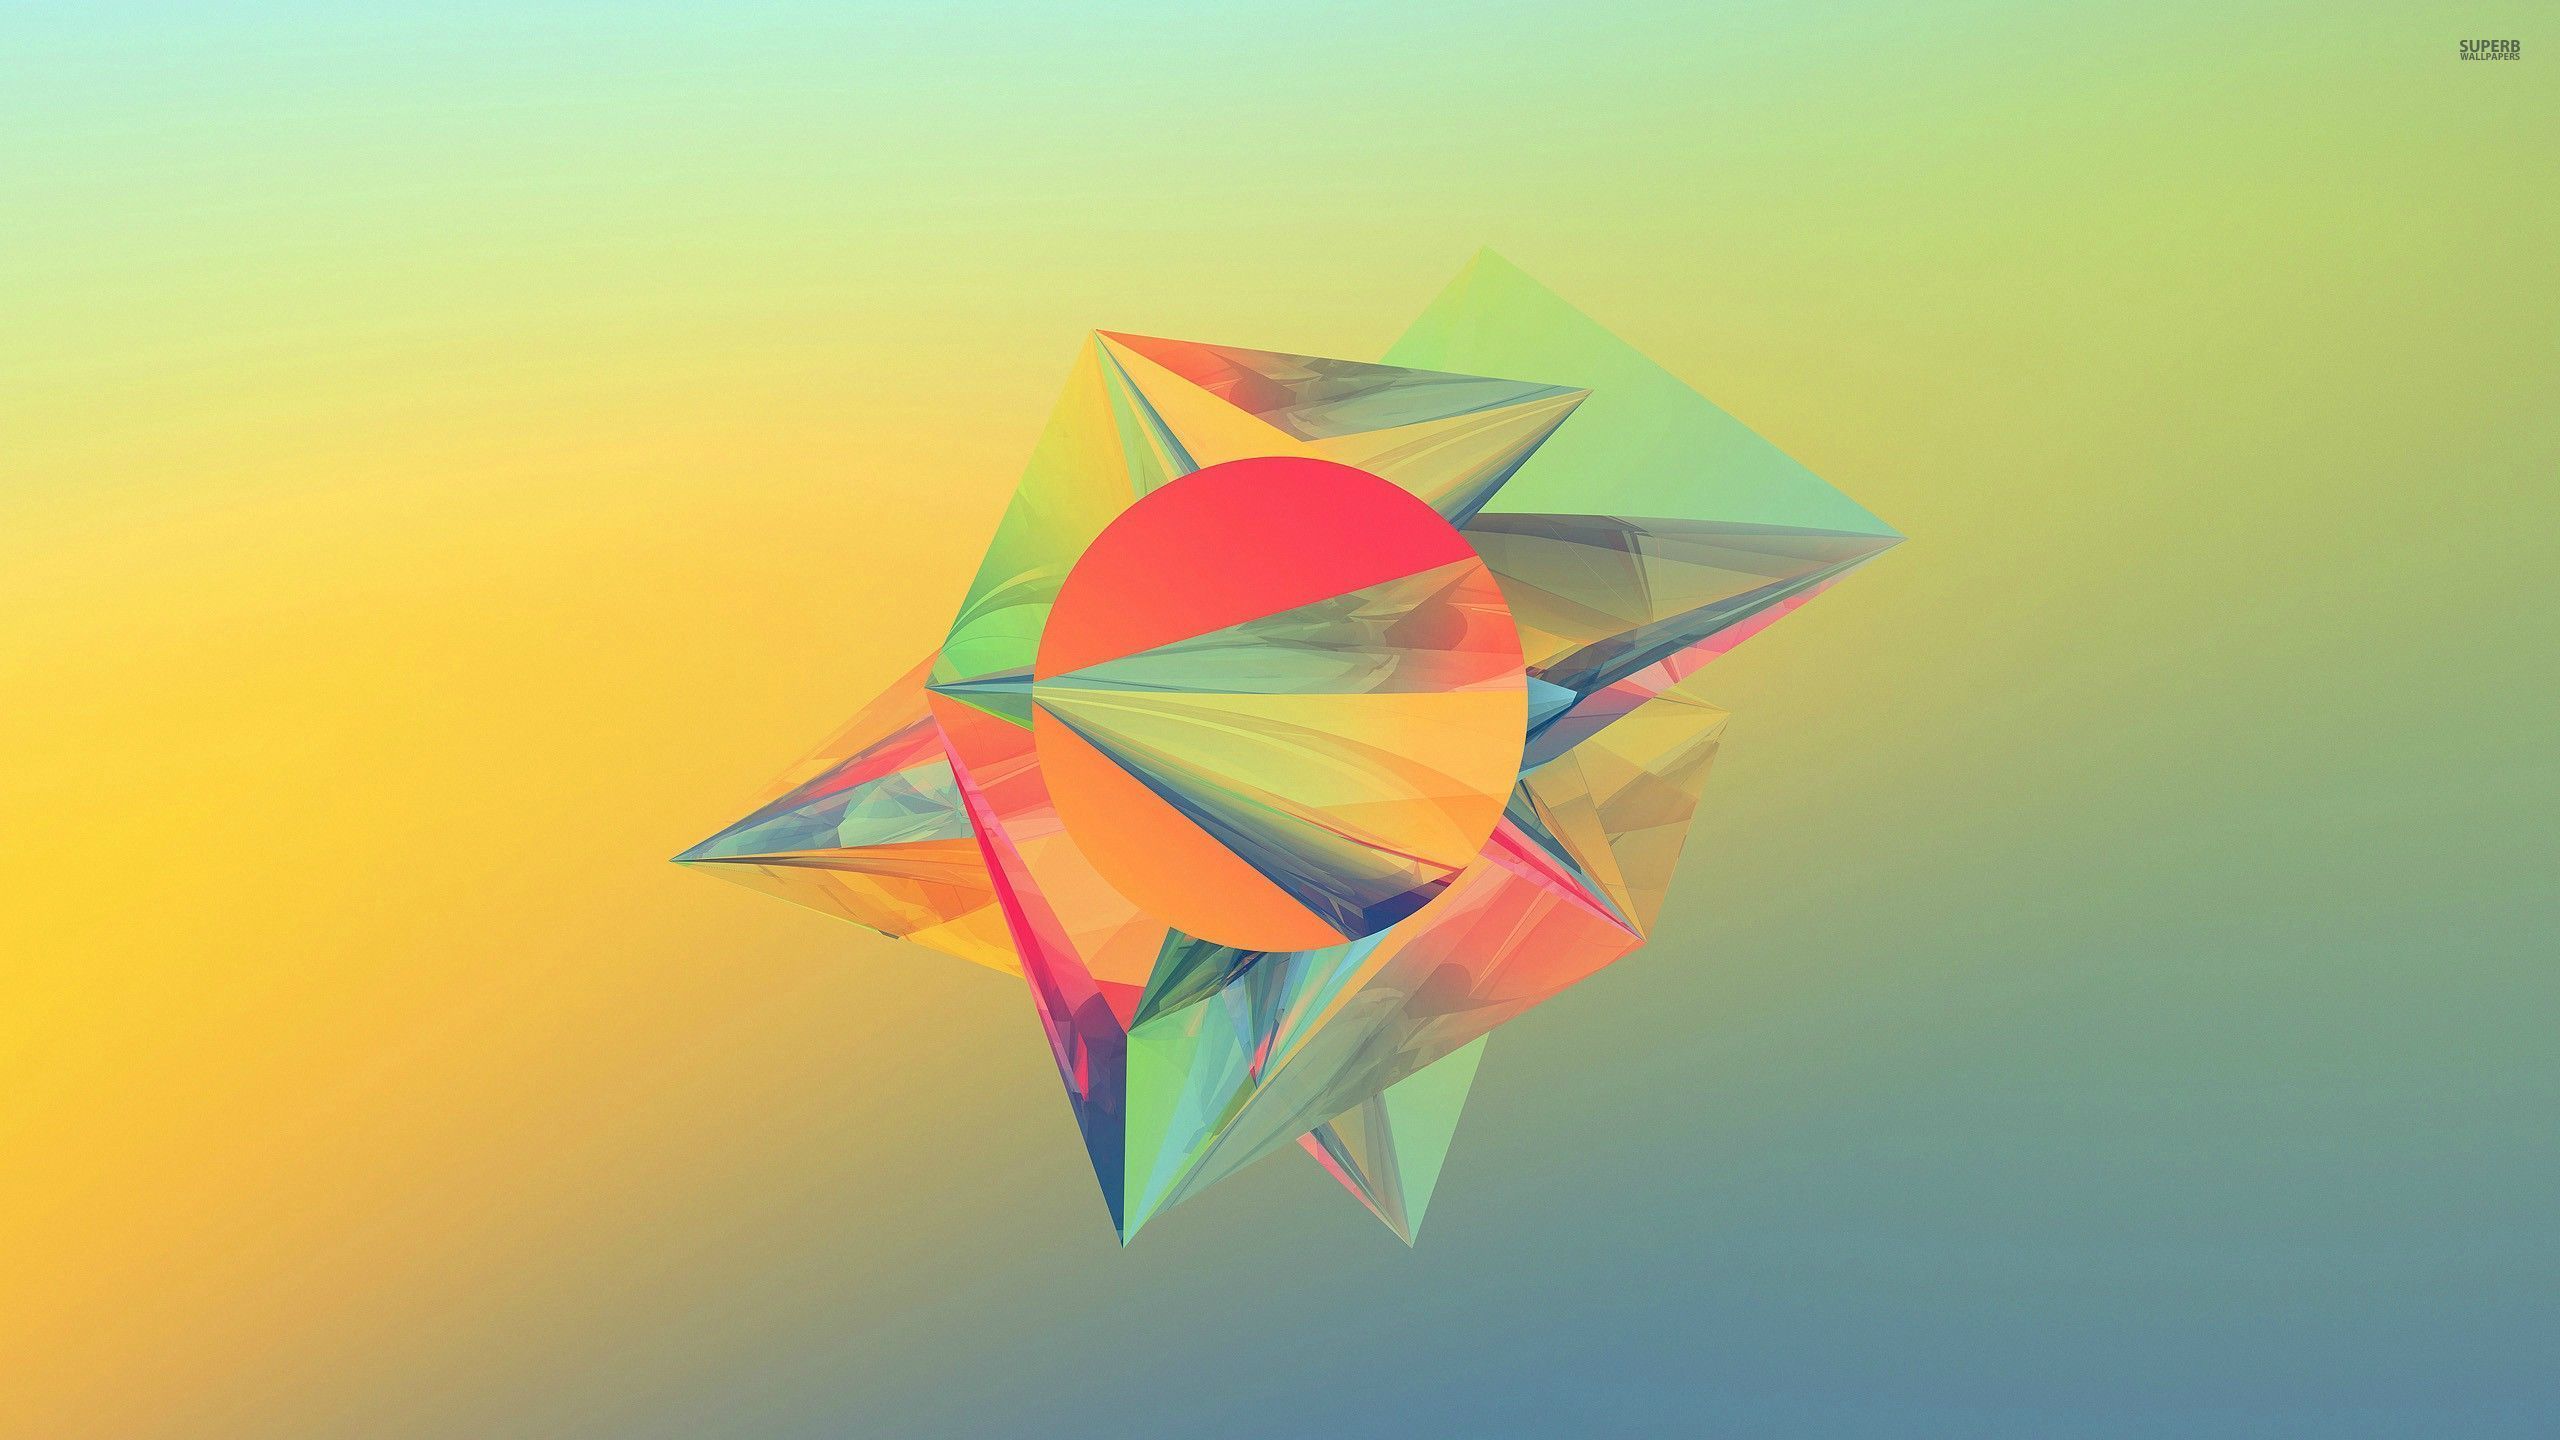 Pastel crystals, circle, polygon, abstract, 2560x1440 HD Wallpaper ...